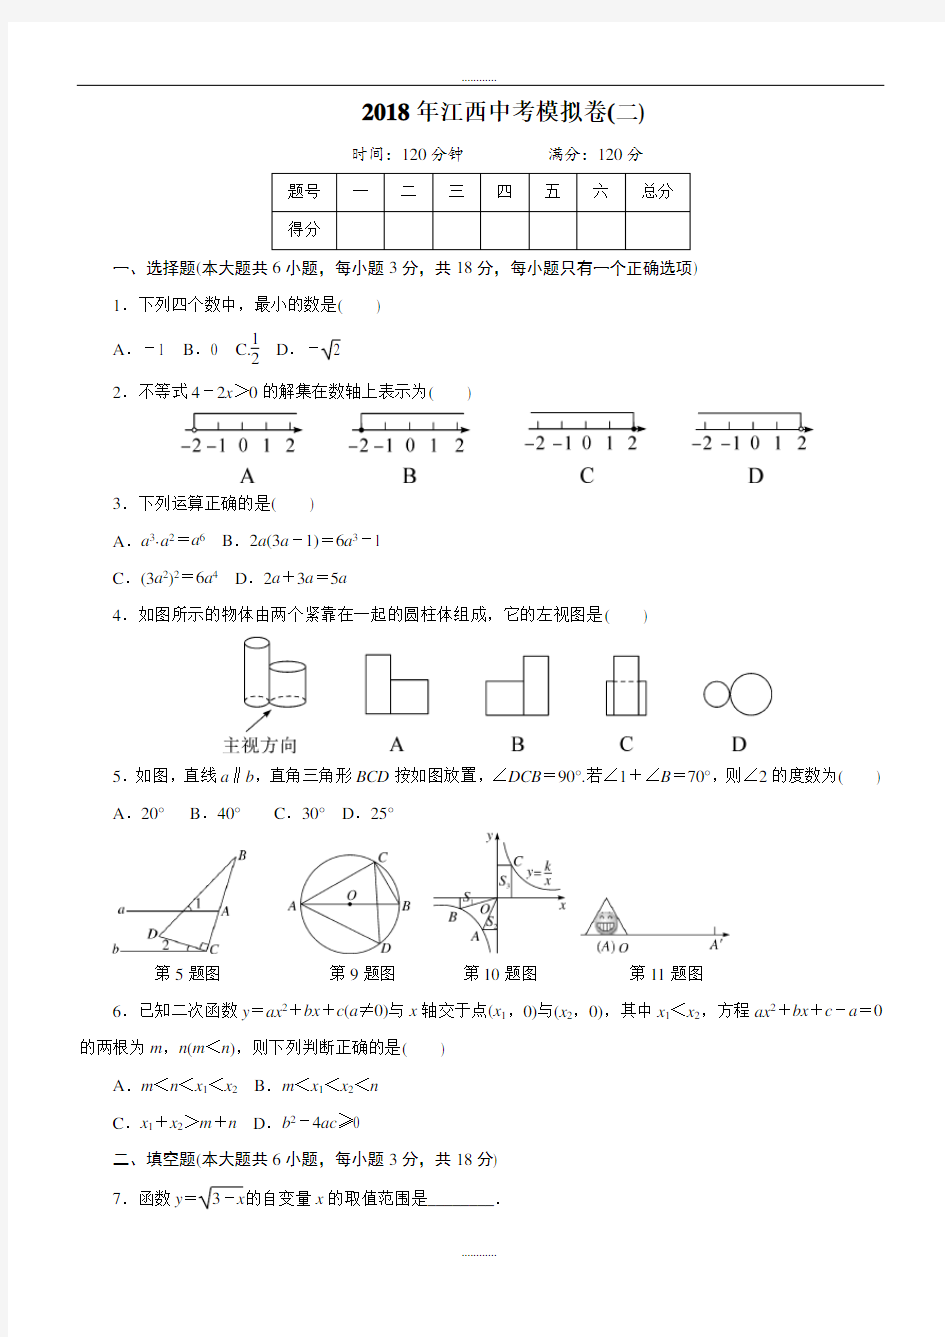 (完整版)江西省2018年最新中考数学模拟试卷(2)(含答案)